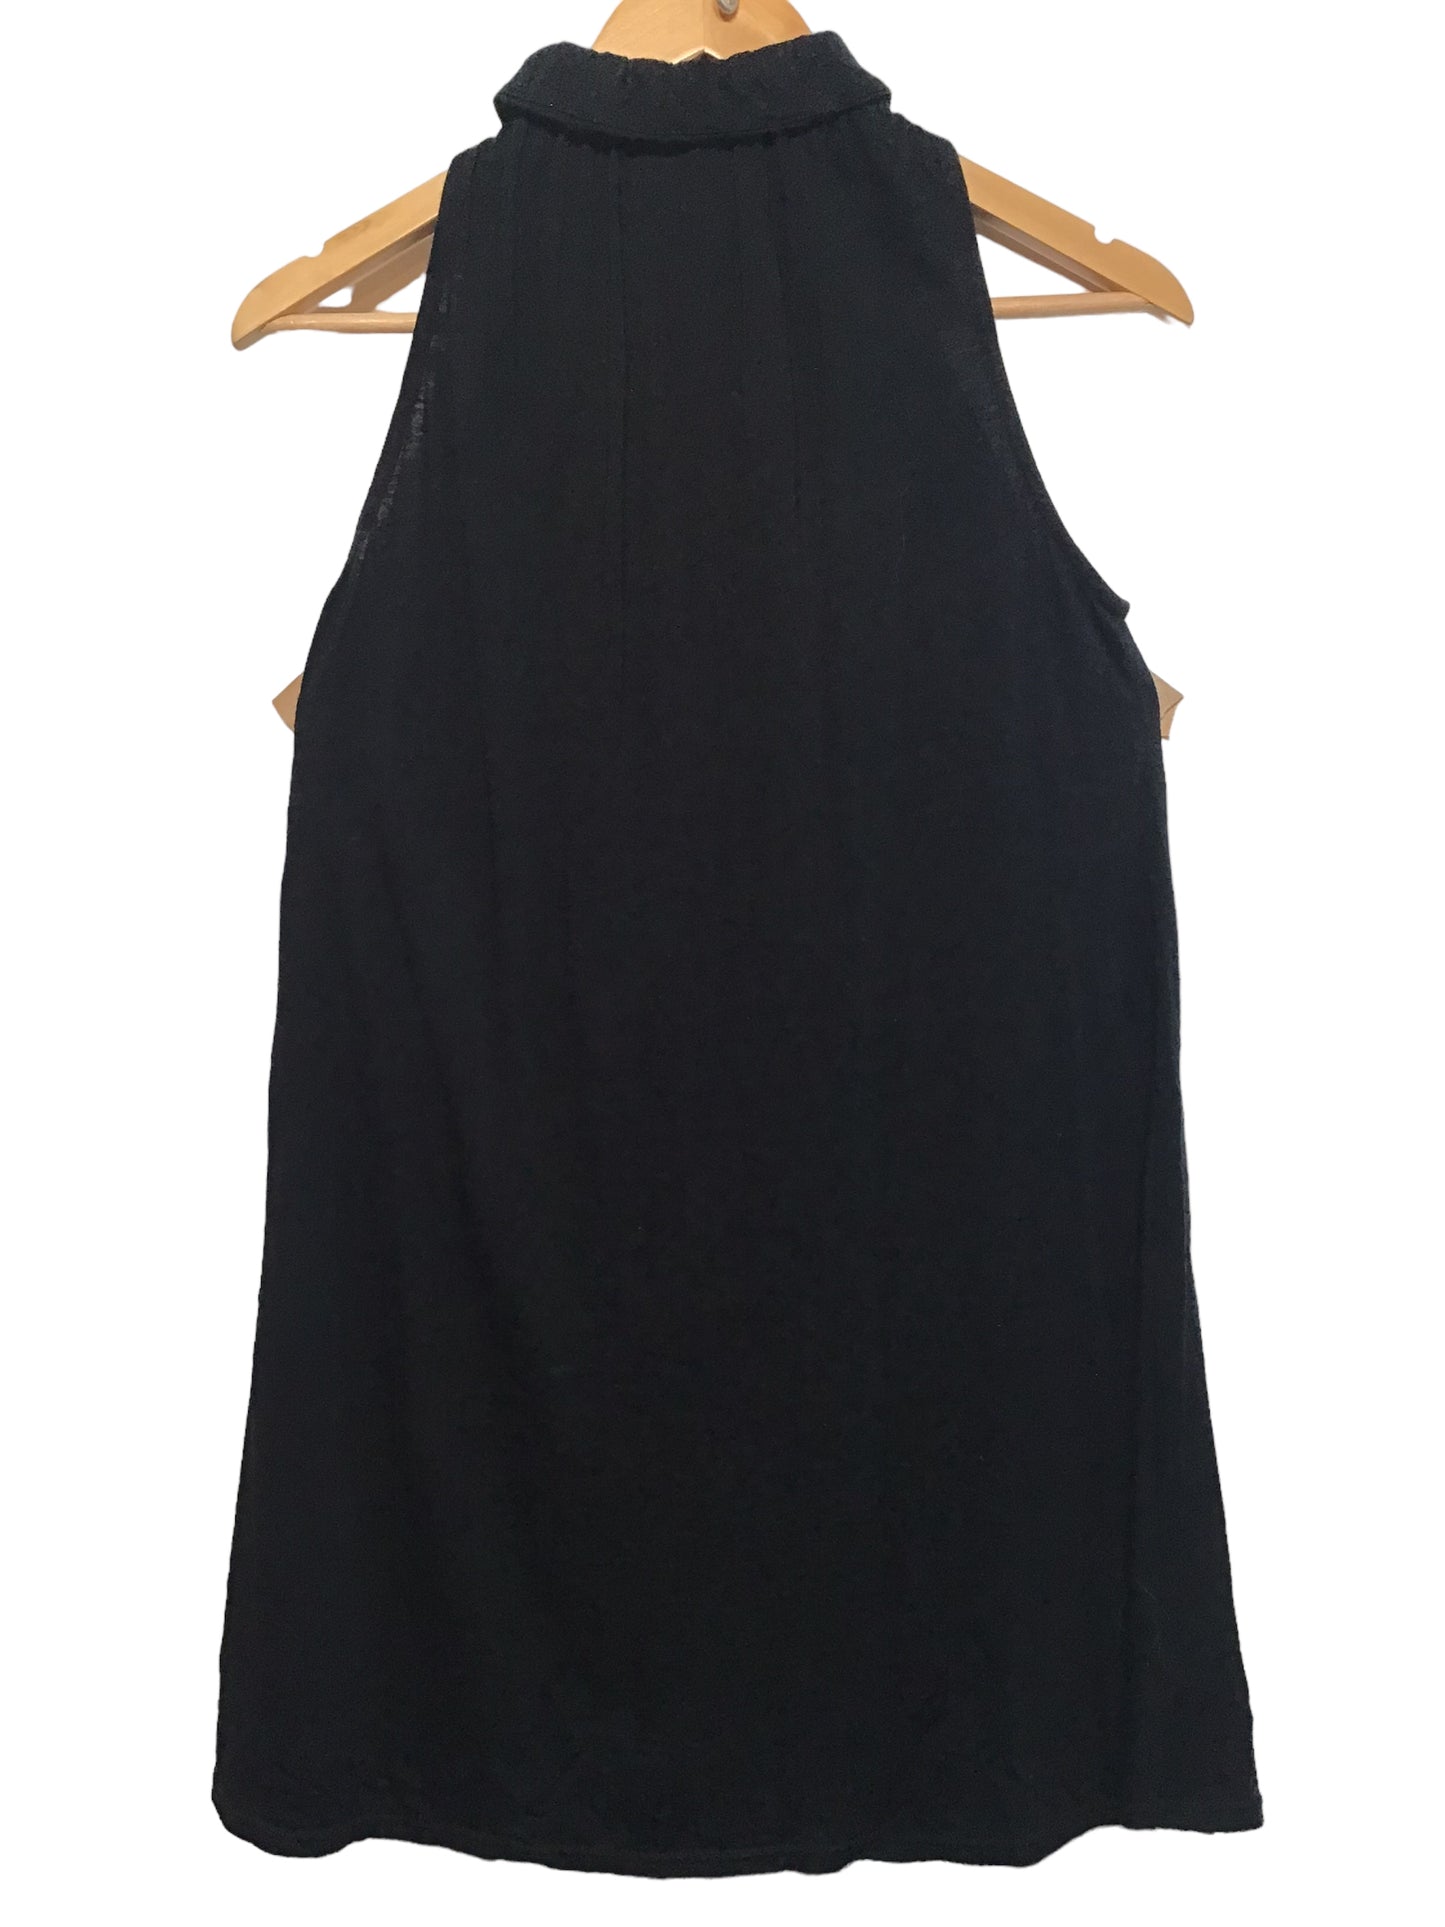 Antpodium Dress (Size M)